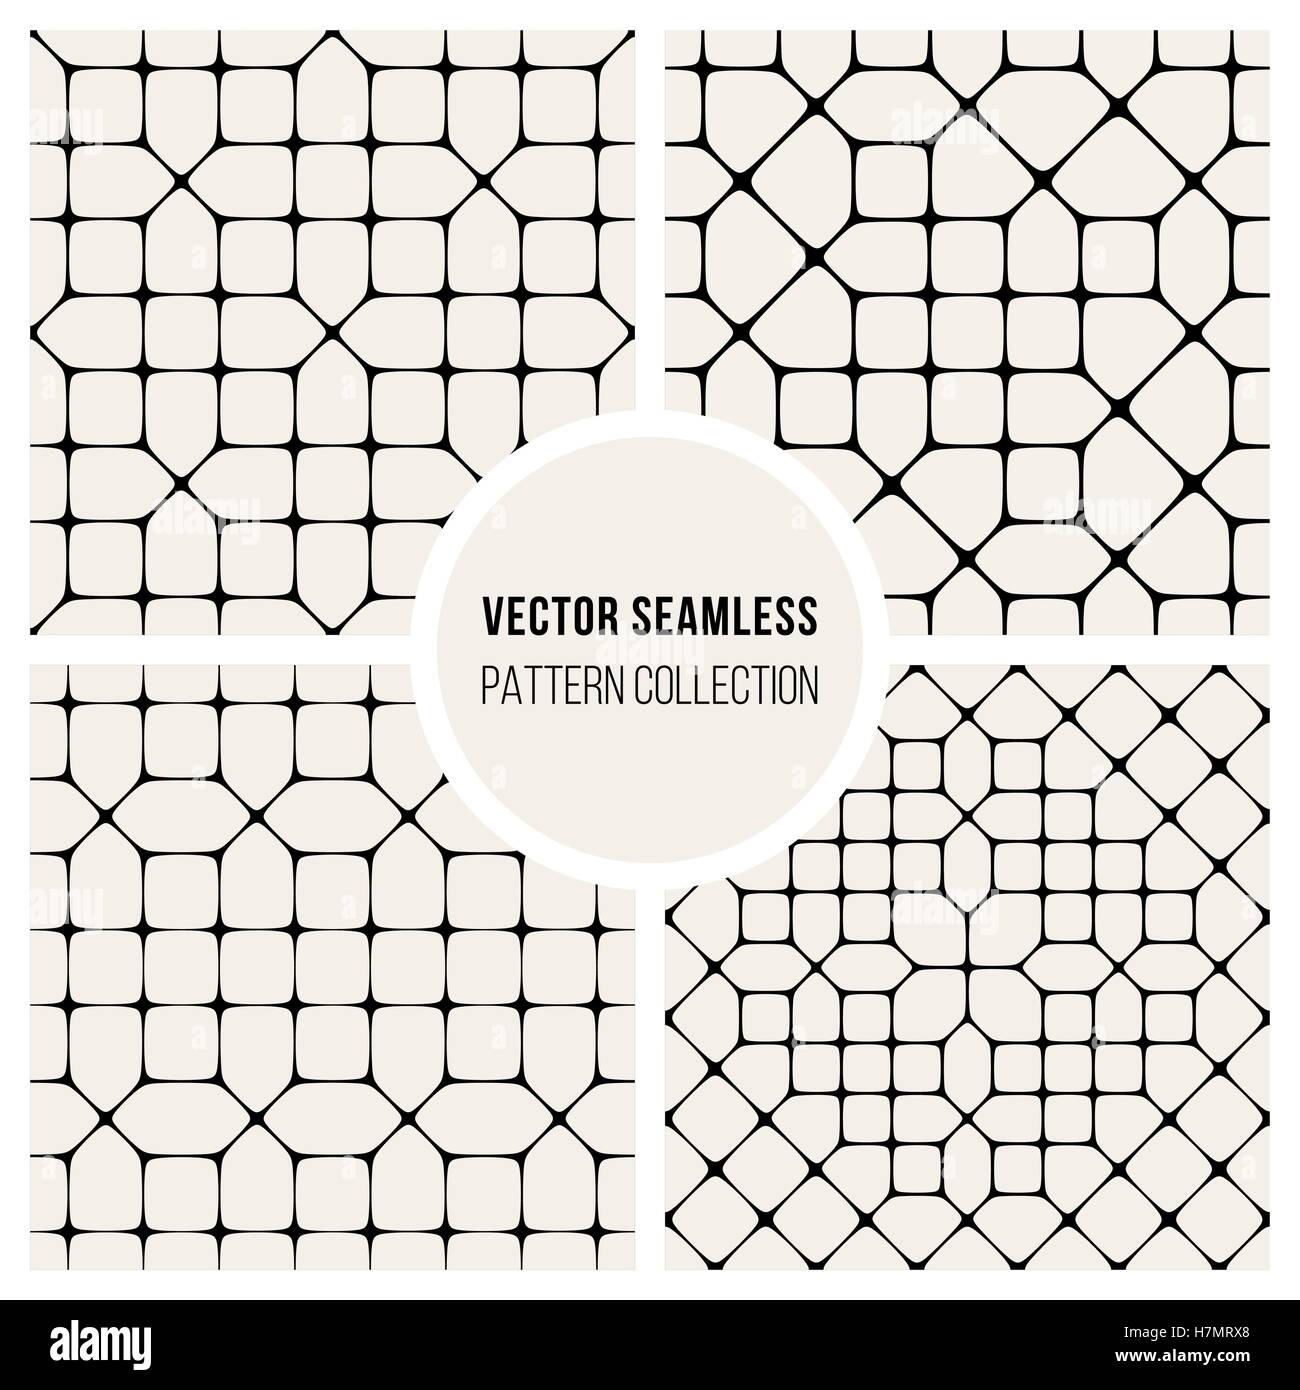 Satz od vier Vector Seamless schwarz und weiße geometrischen Muster Kollektion Fliesen Hintergrund Stock Vektor